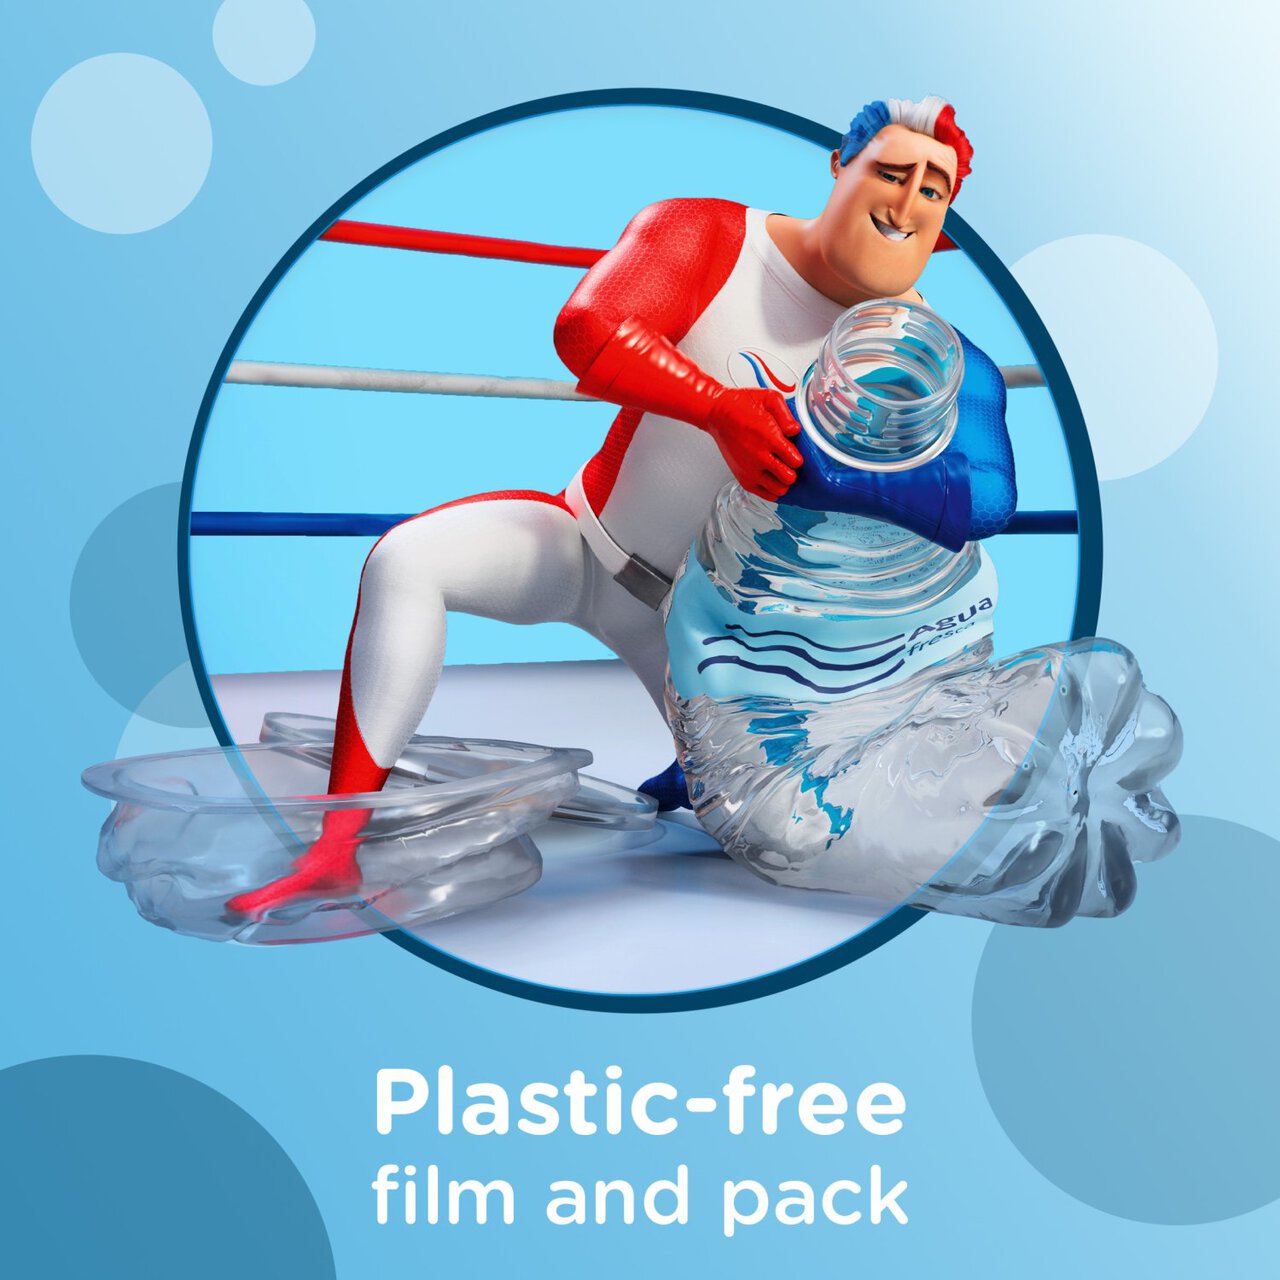 Aquafresh Milk Teeth Toothbrush for Kids 0-2 in Plastic-Free Packaging